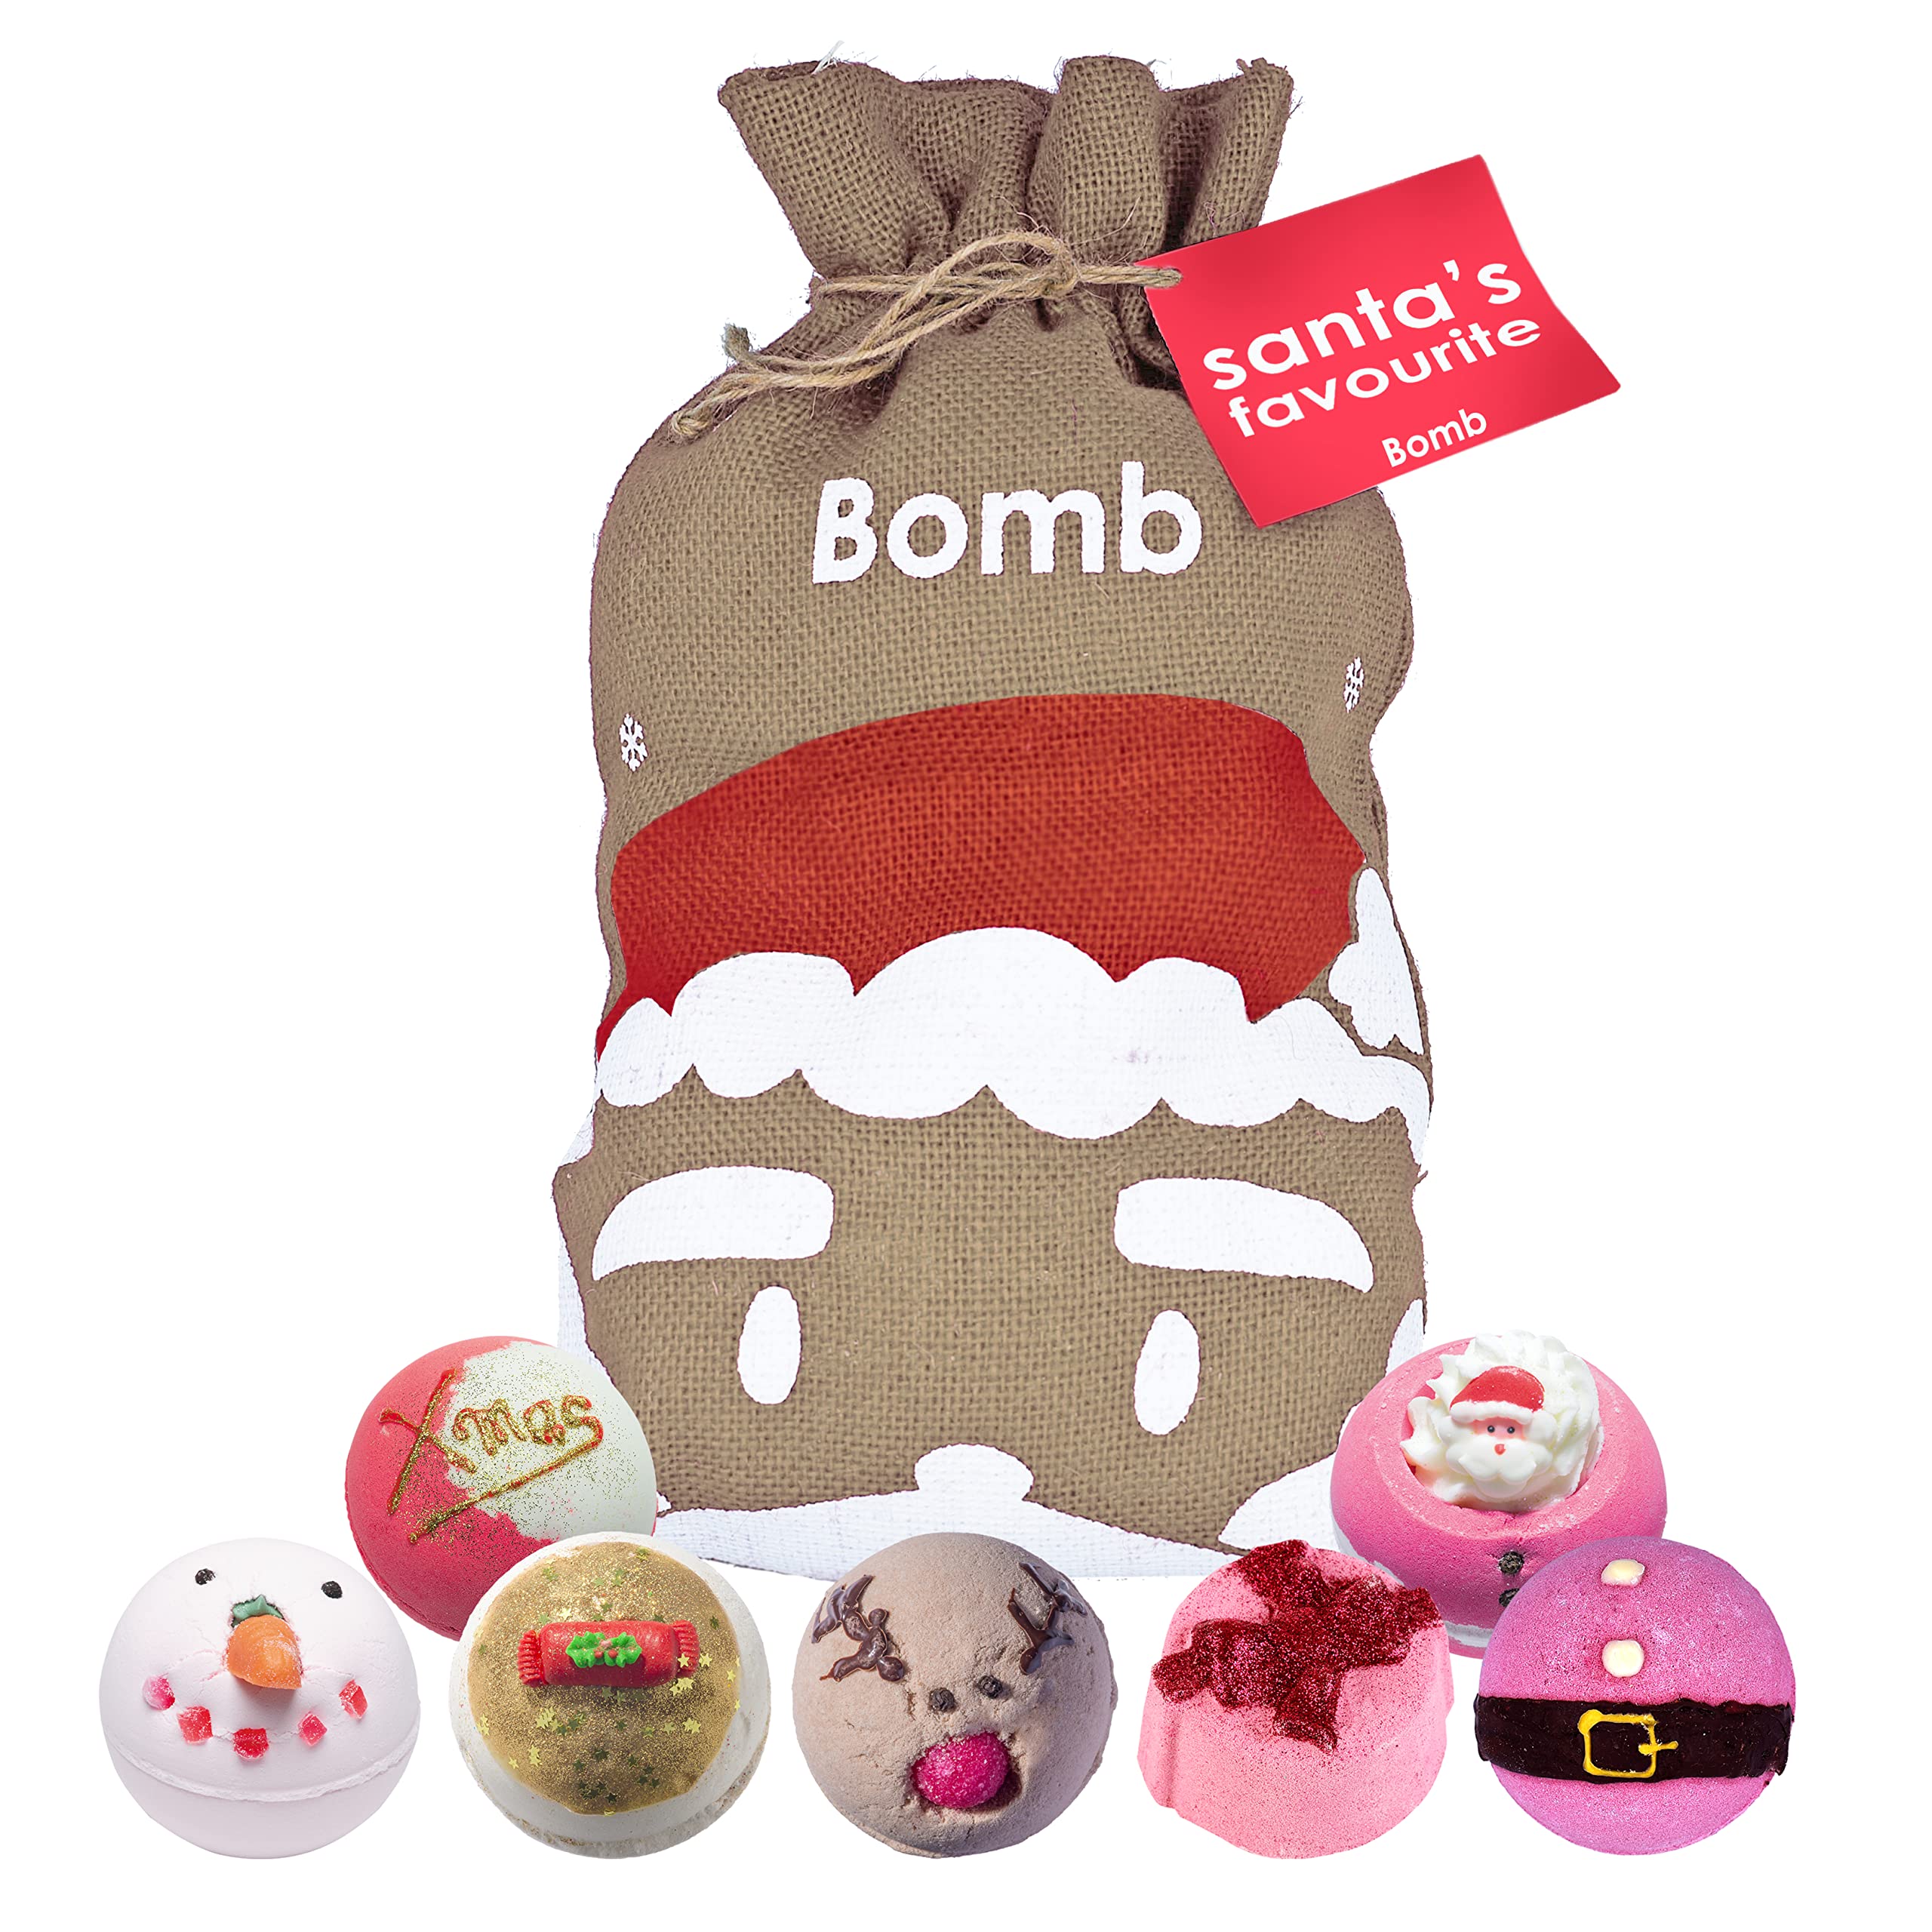 Bomb Cosmetics Santa's Favourite handgefertigter Sackleinen-Bade-Blaster, Geschenkpackung, enthält 7 Stück, je 160 g, Rot